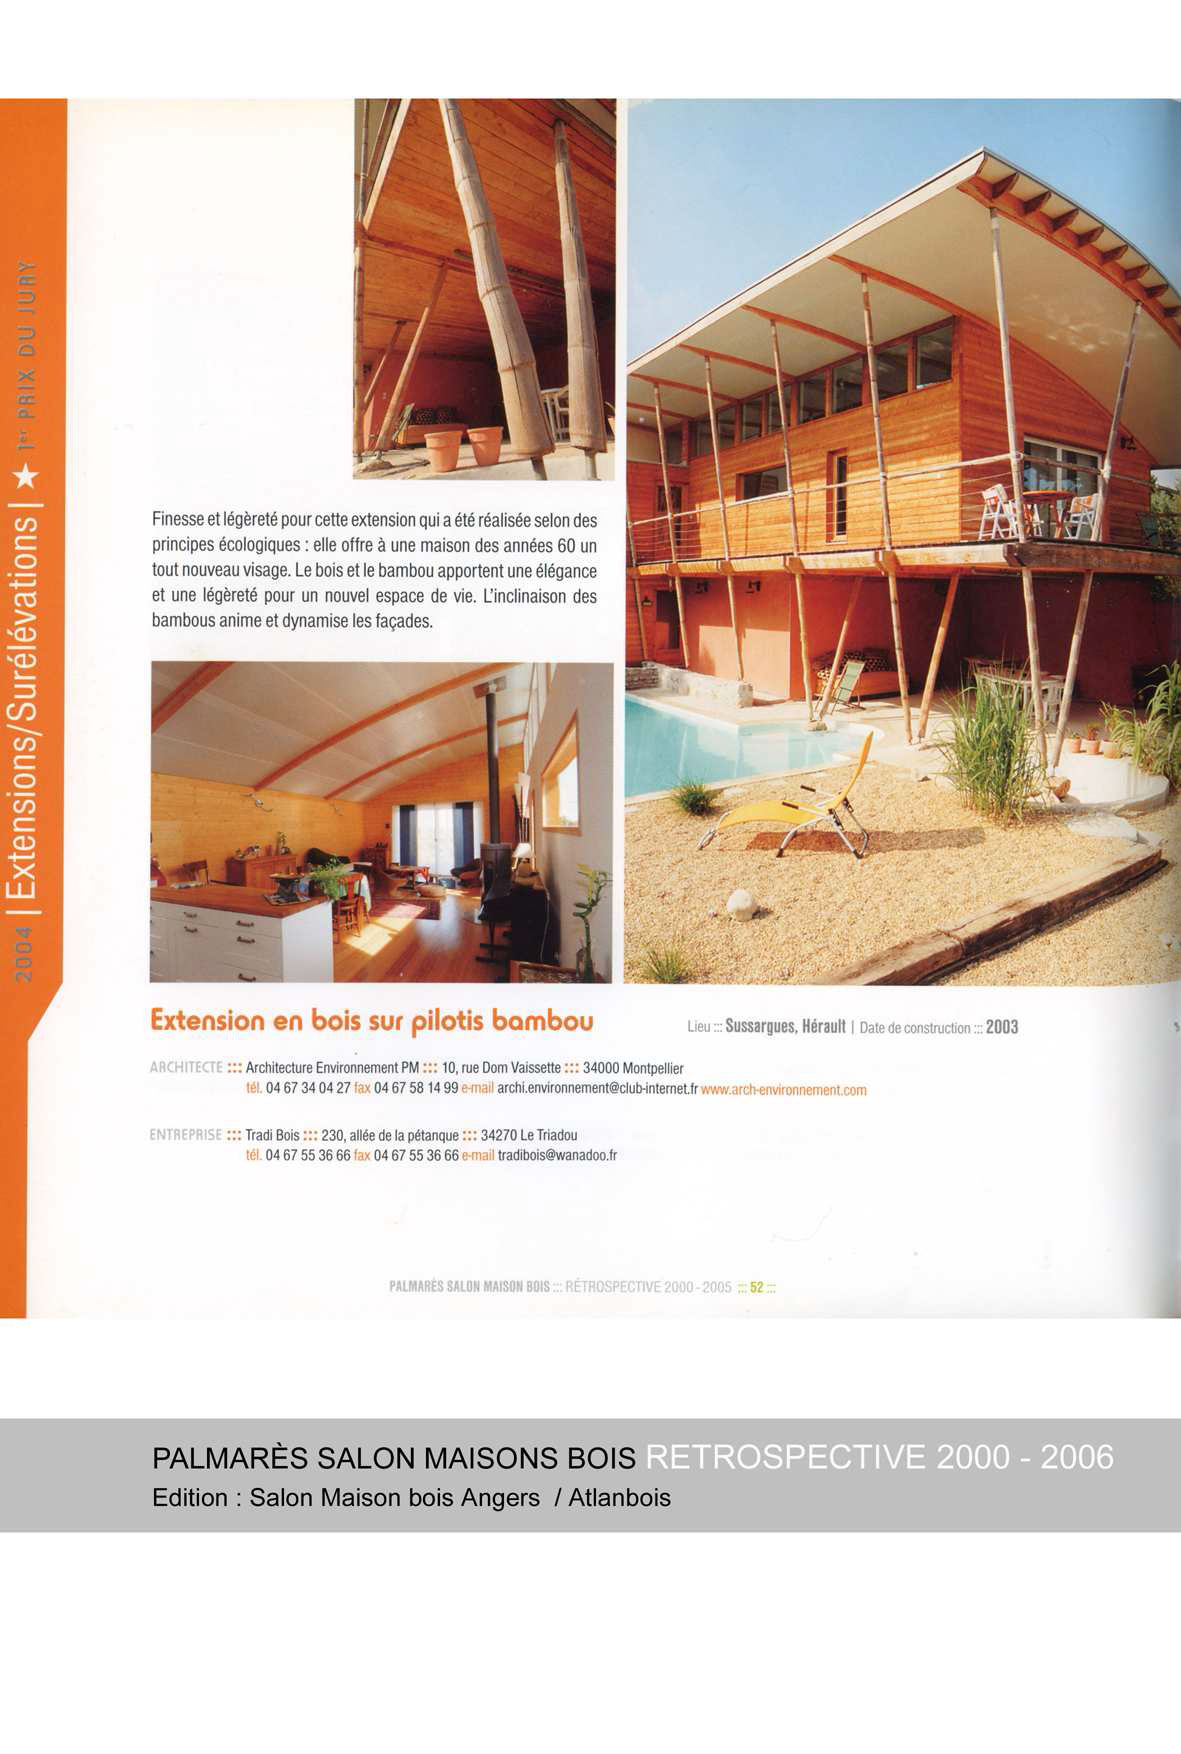 palmares-salon-maison-bois-dangers-retrospective-2000-2005-extension-bois-sur-pilotis-bambou